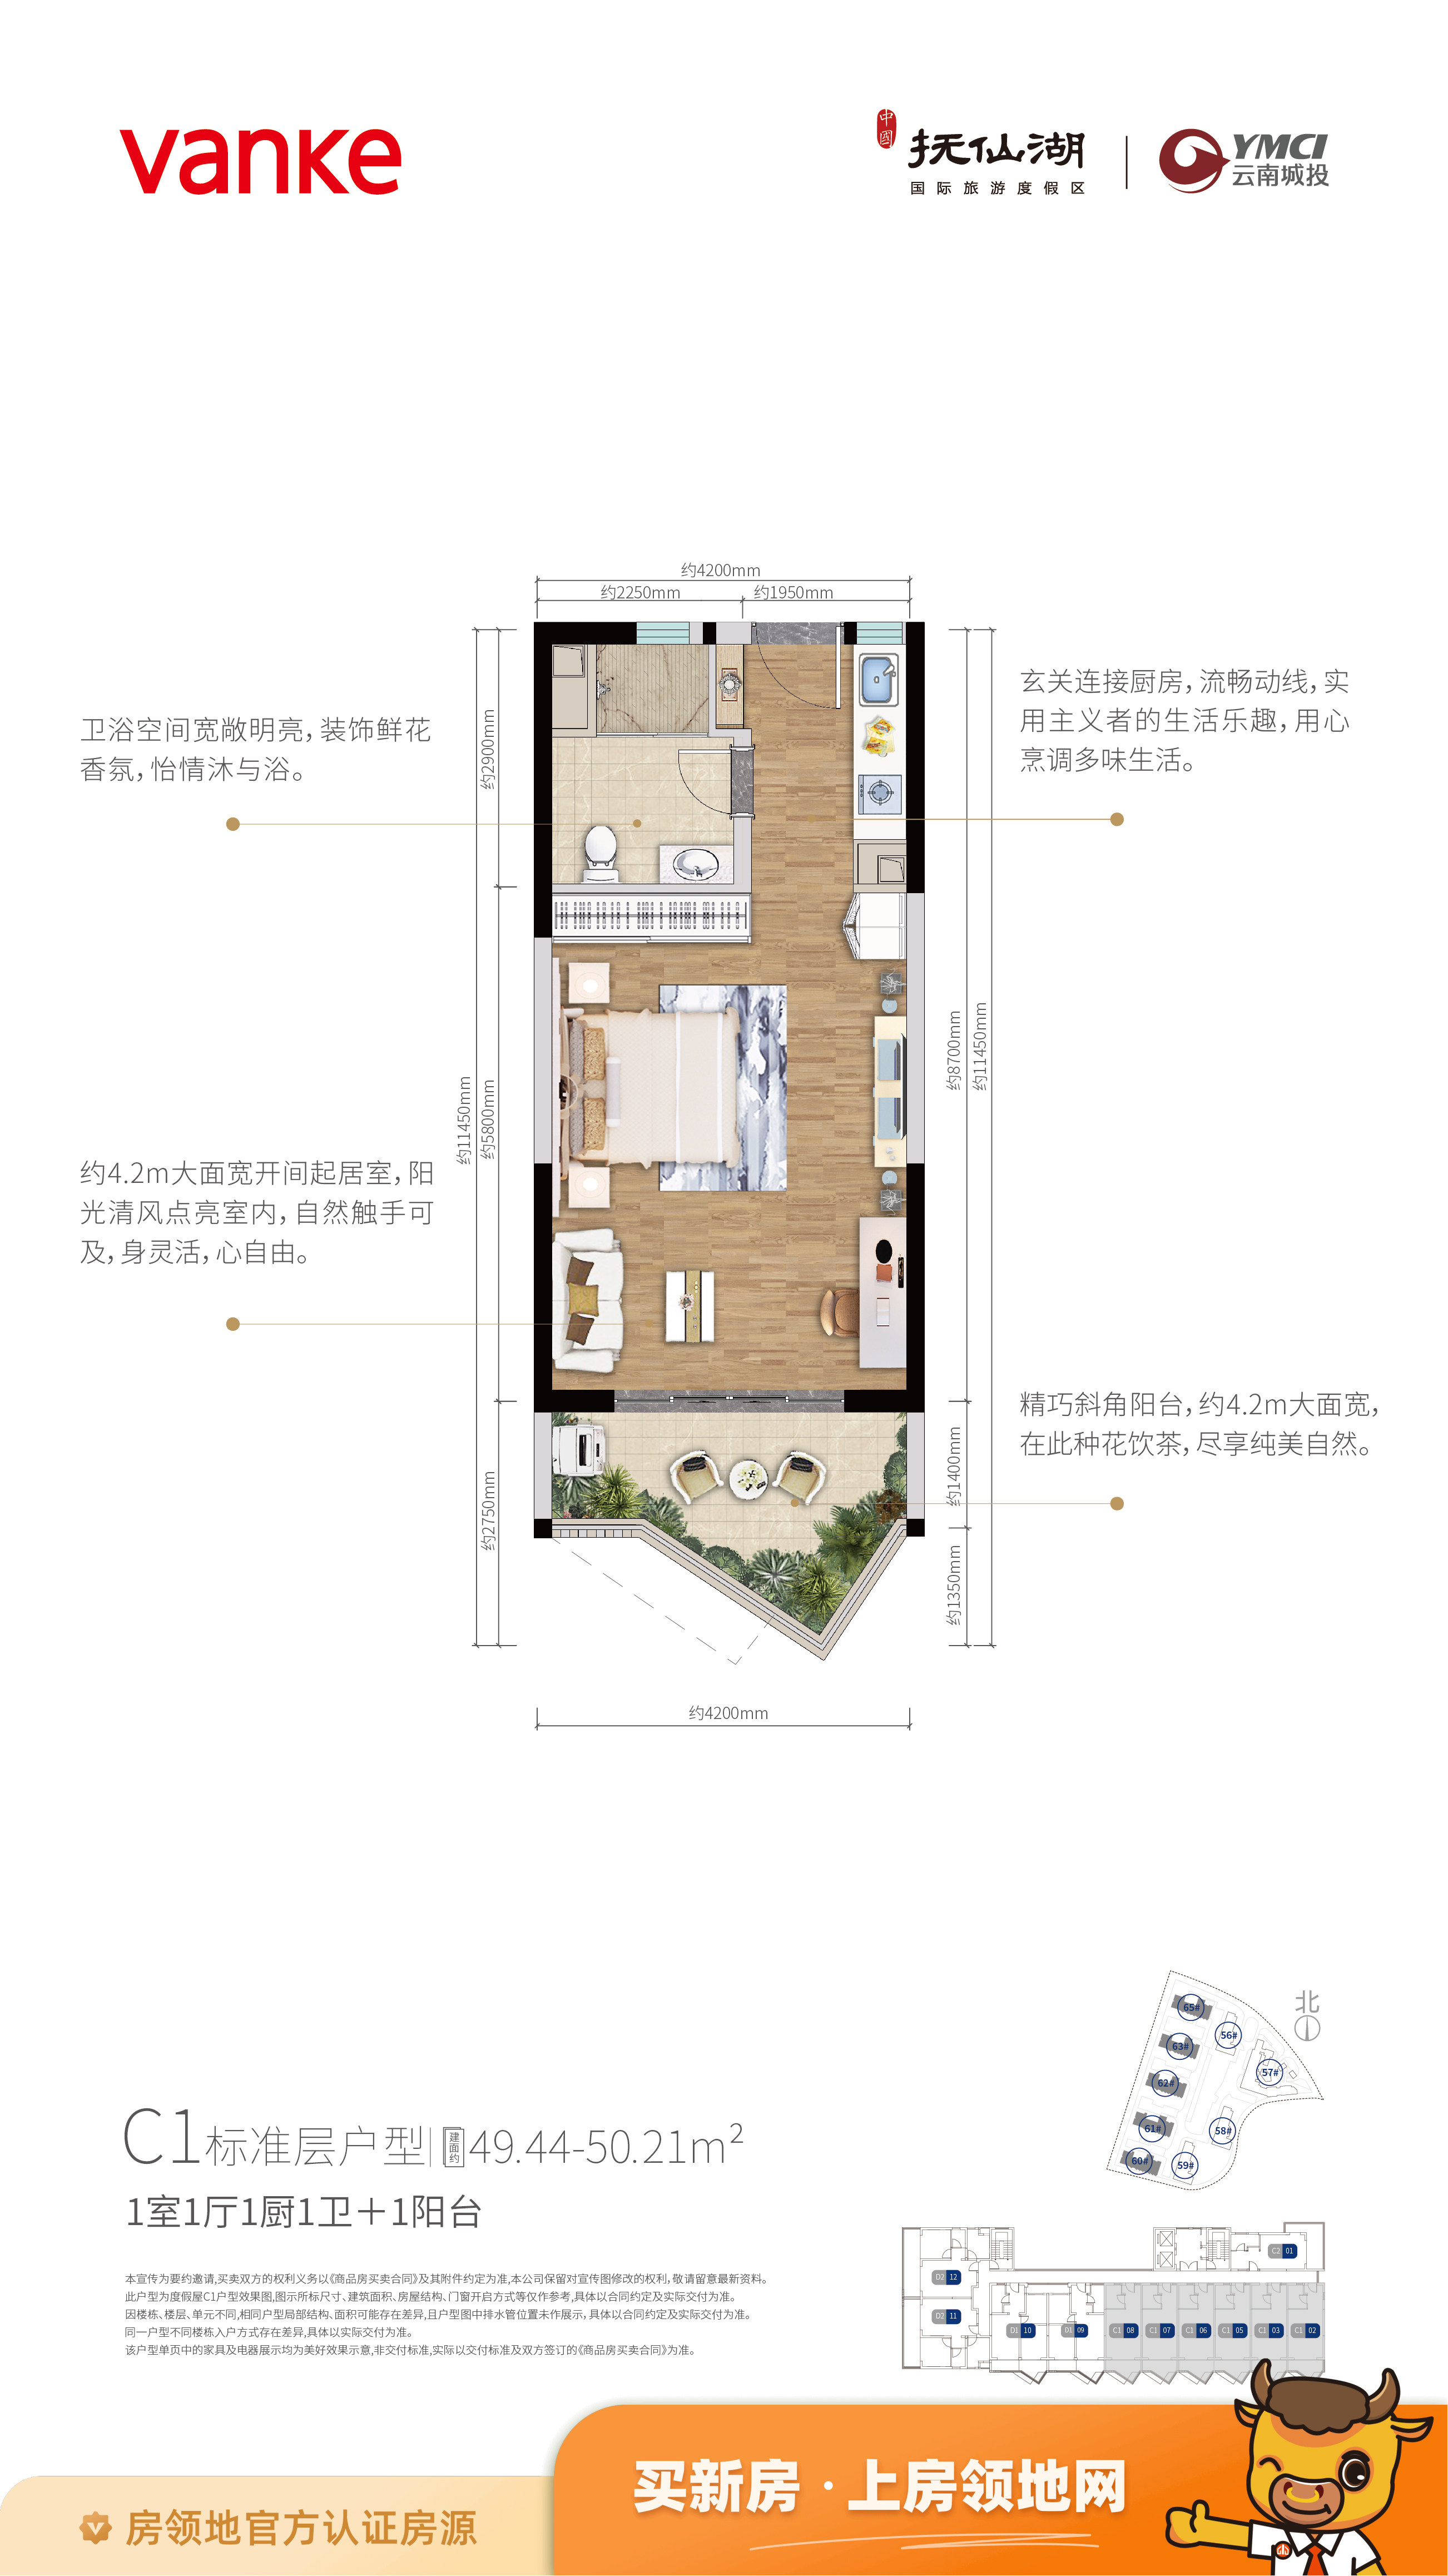 中国抚仙湖国际旅游度假区宽院户型图1室1厅1卫